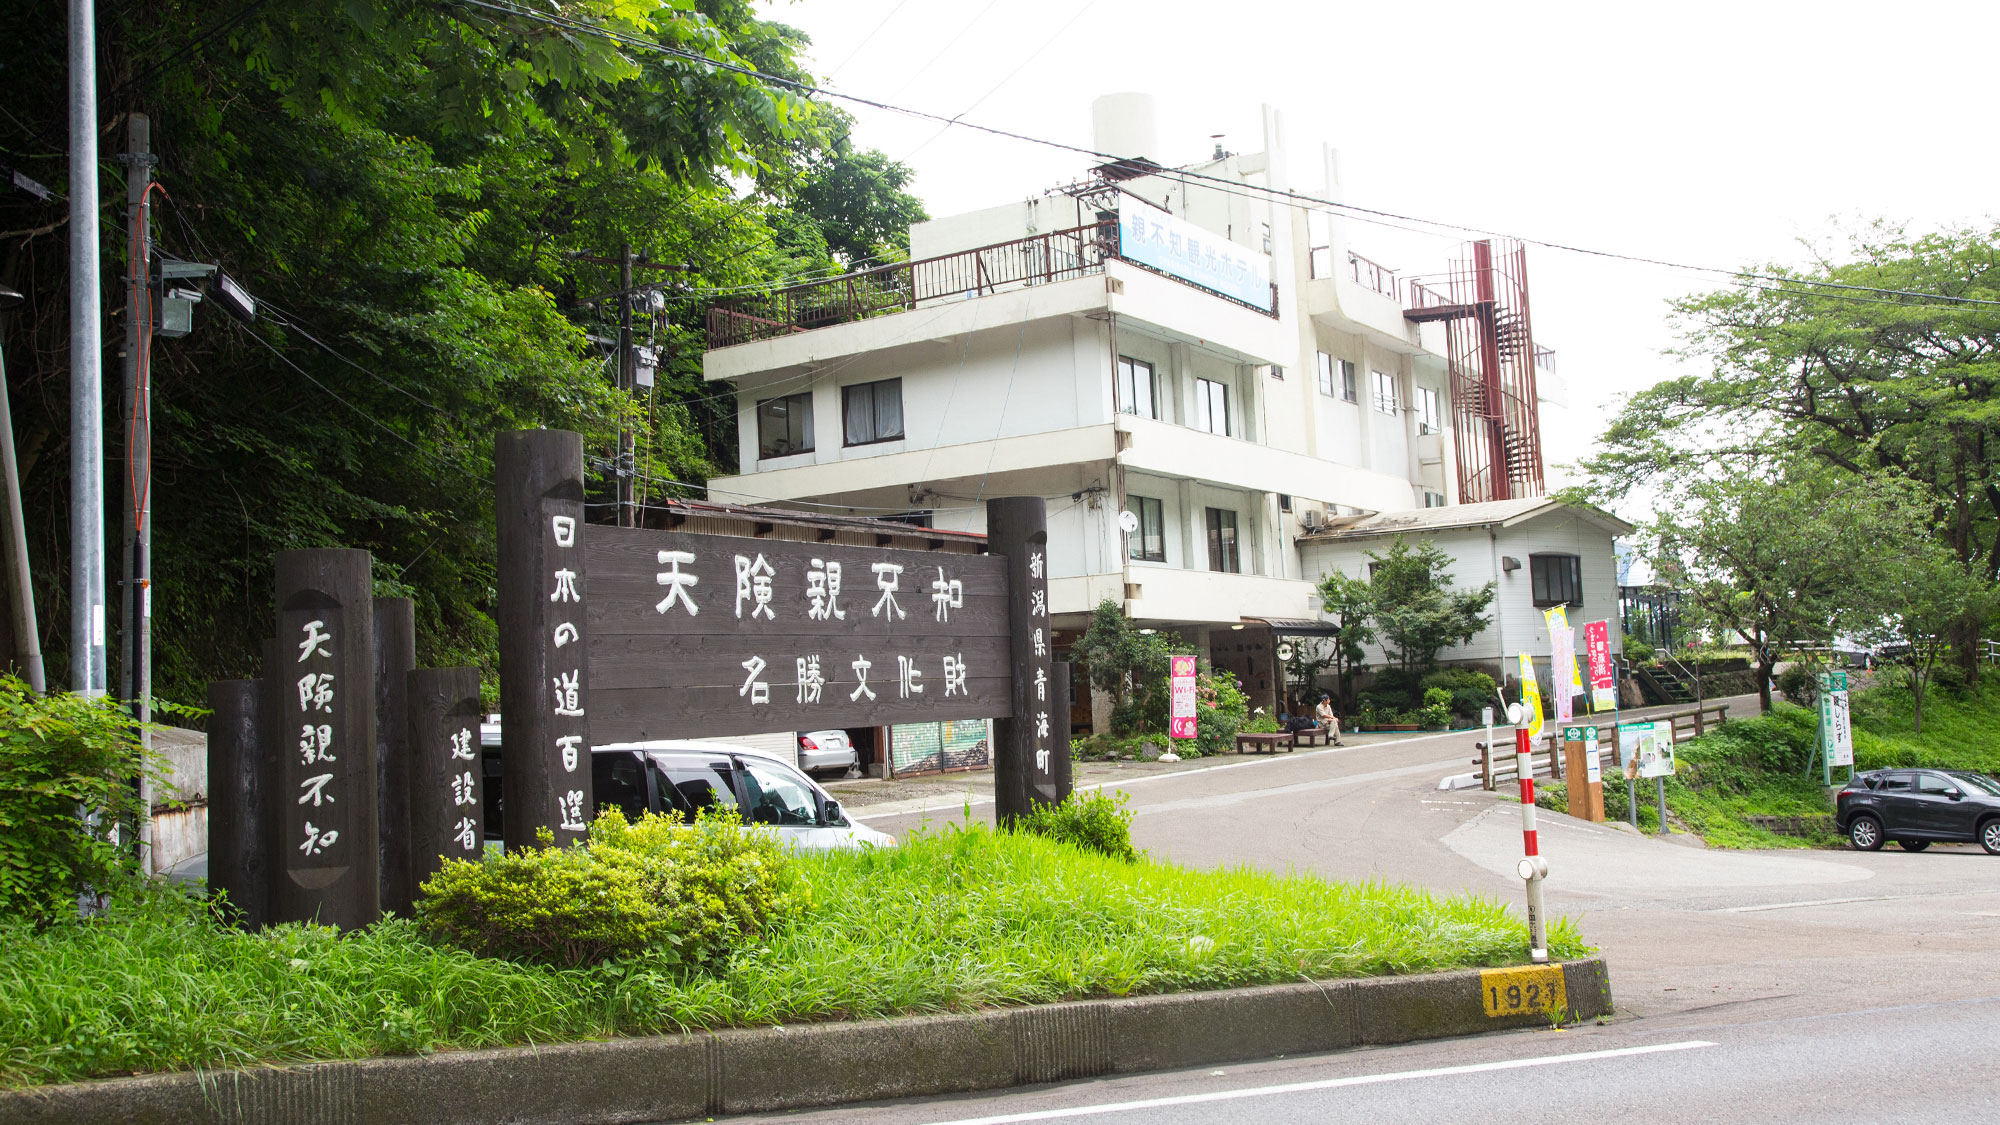 ホテル横の遊歩道「親不知コミュニティーロード」は日本の道百選に選ばれています。